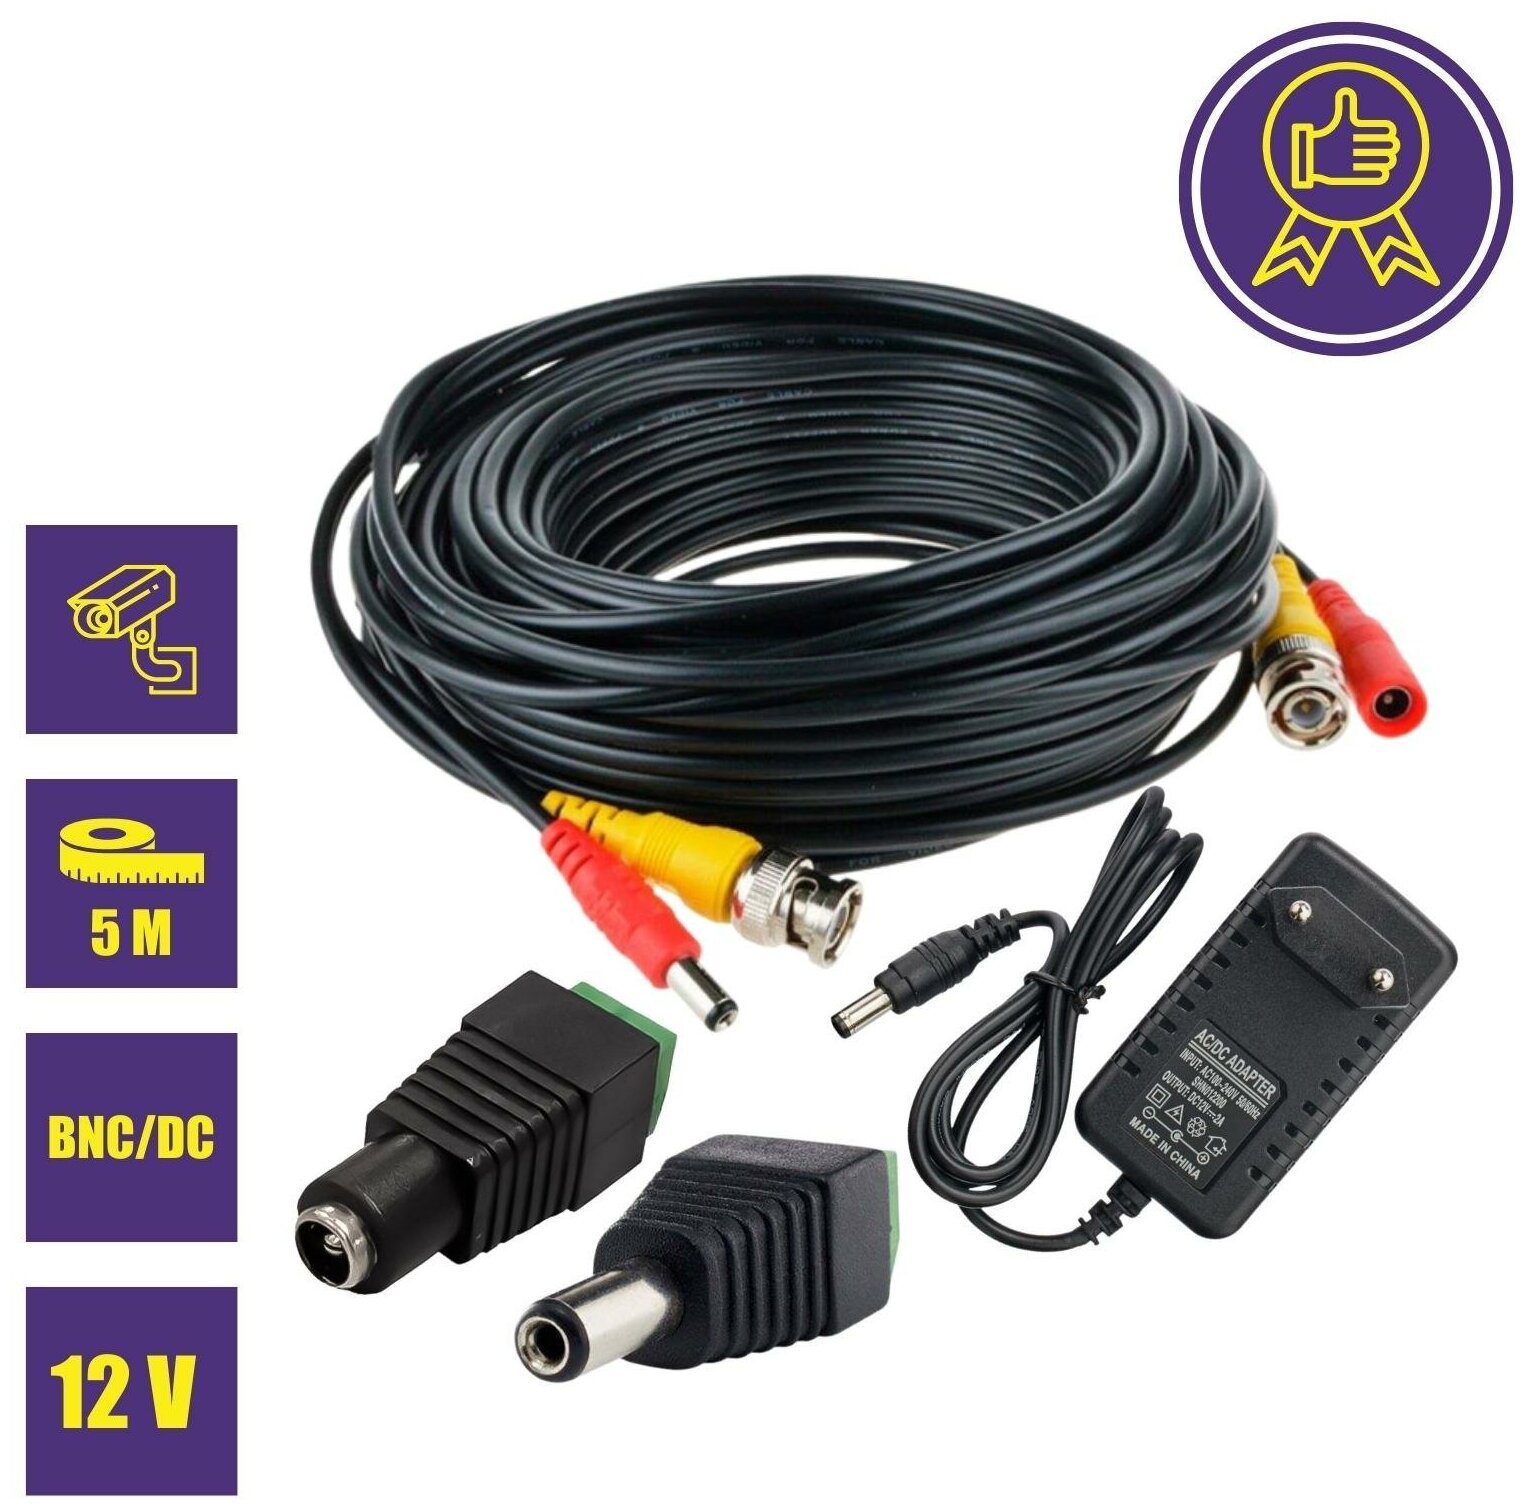 Комплект К-5 для системы видеонаблюдения: кабель BNC/DC 5 м, переходники DC(мама), DC(папа) и блок питания